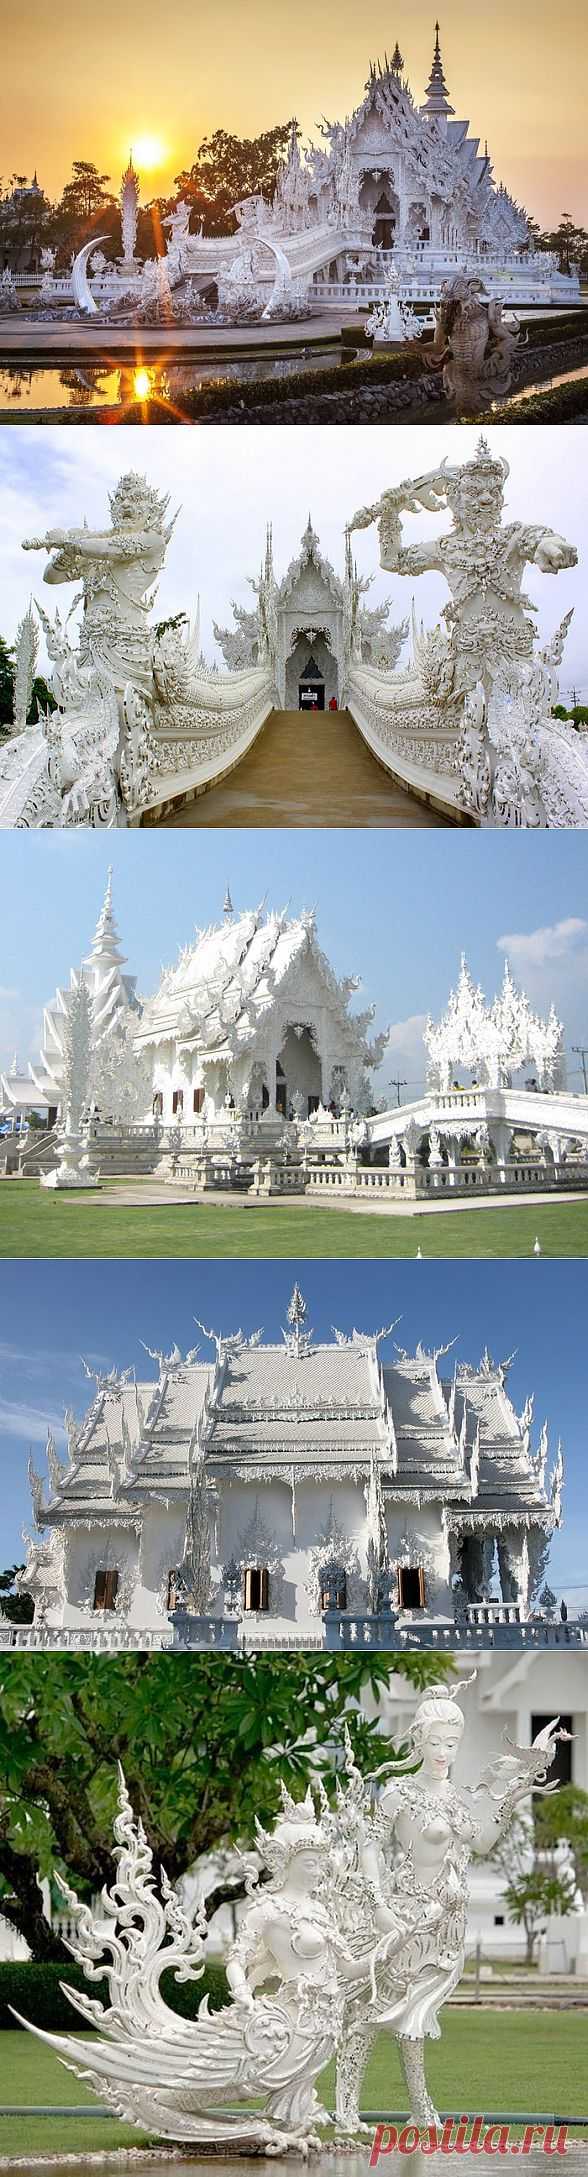 Одна из самых красивых буддийских святынь мира - храм под названием Ват Ронг Кхун. За белоснежные узоры и скульптуры, выполненные из алебастра, его еще именуют белый храм. Тайский храм был воздвигнут недавно - в 1998 году в 10 километрах от города Чианграя, который является столицей одноименной провинции.